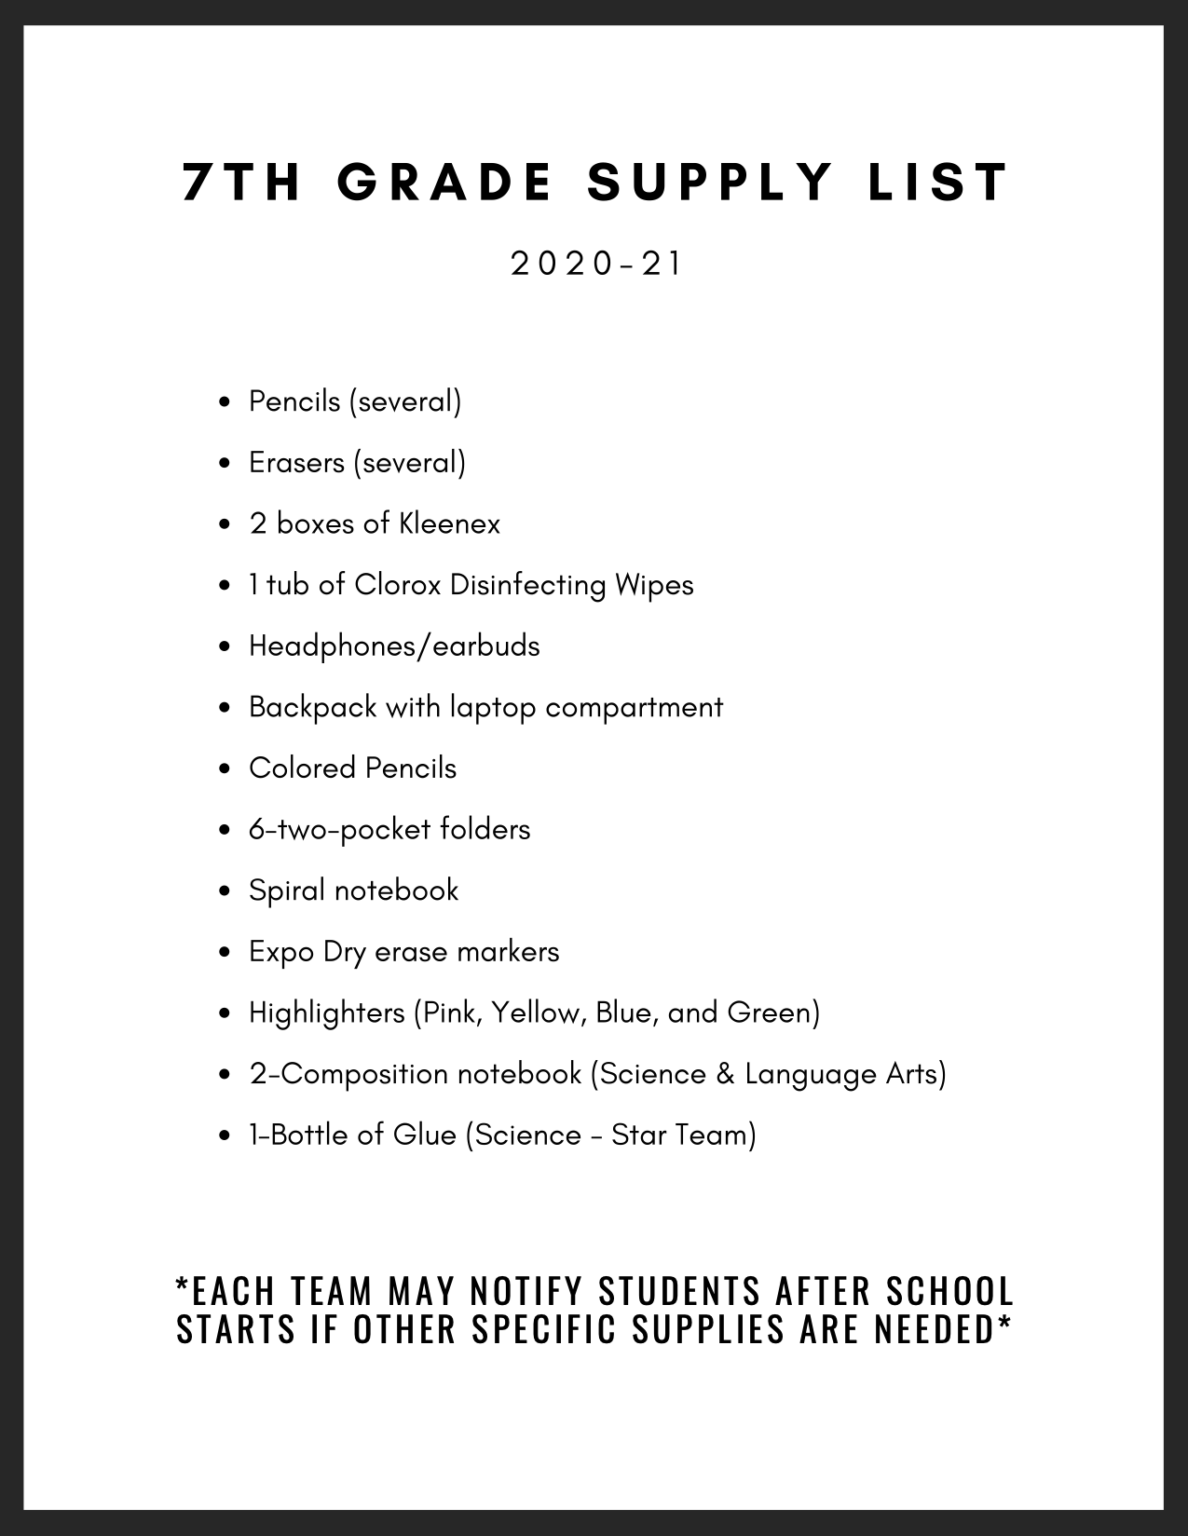 School Supply Lists Lexington Public Schools